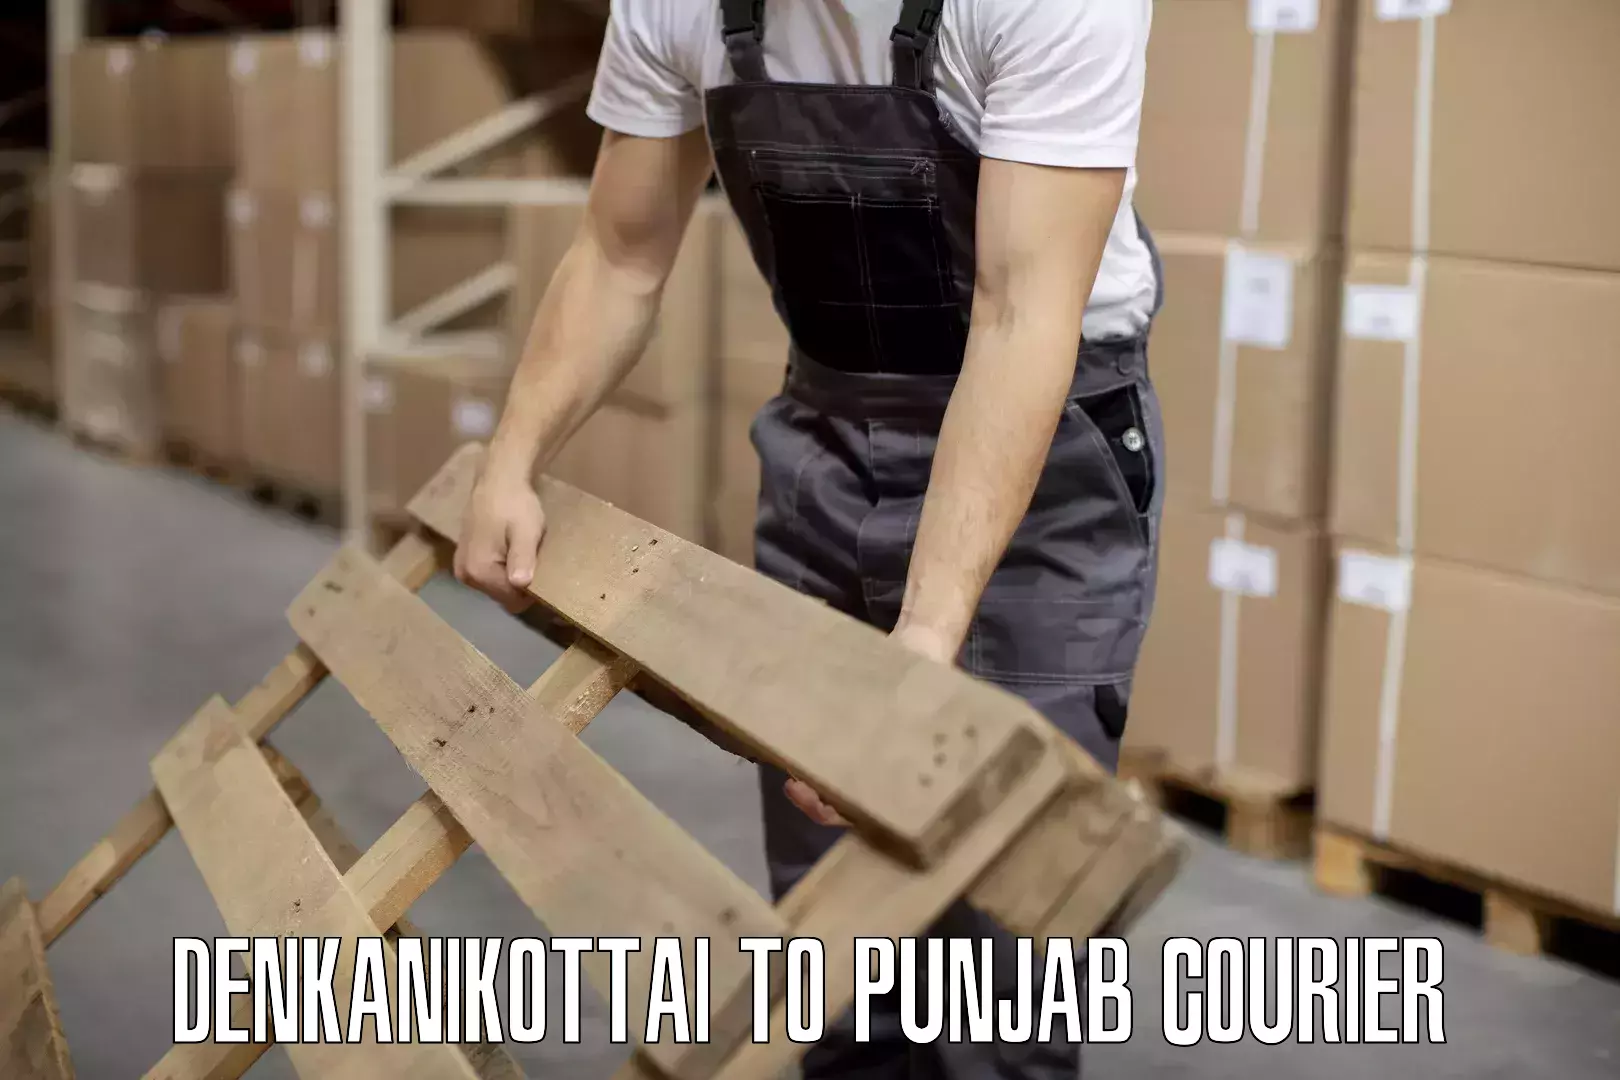 Affordable luggage courier Denkanikottai to Punjab